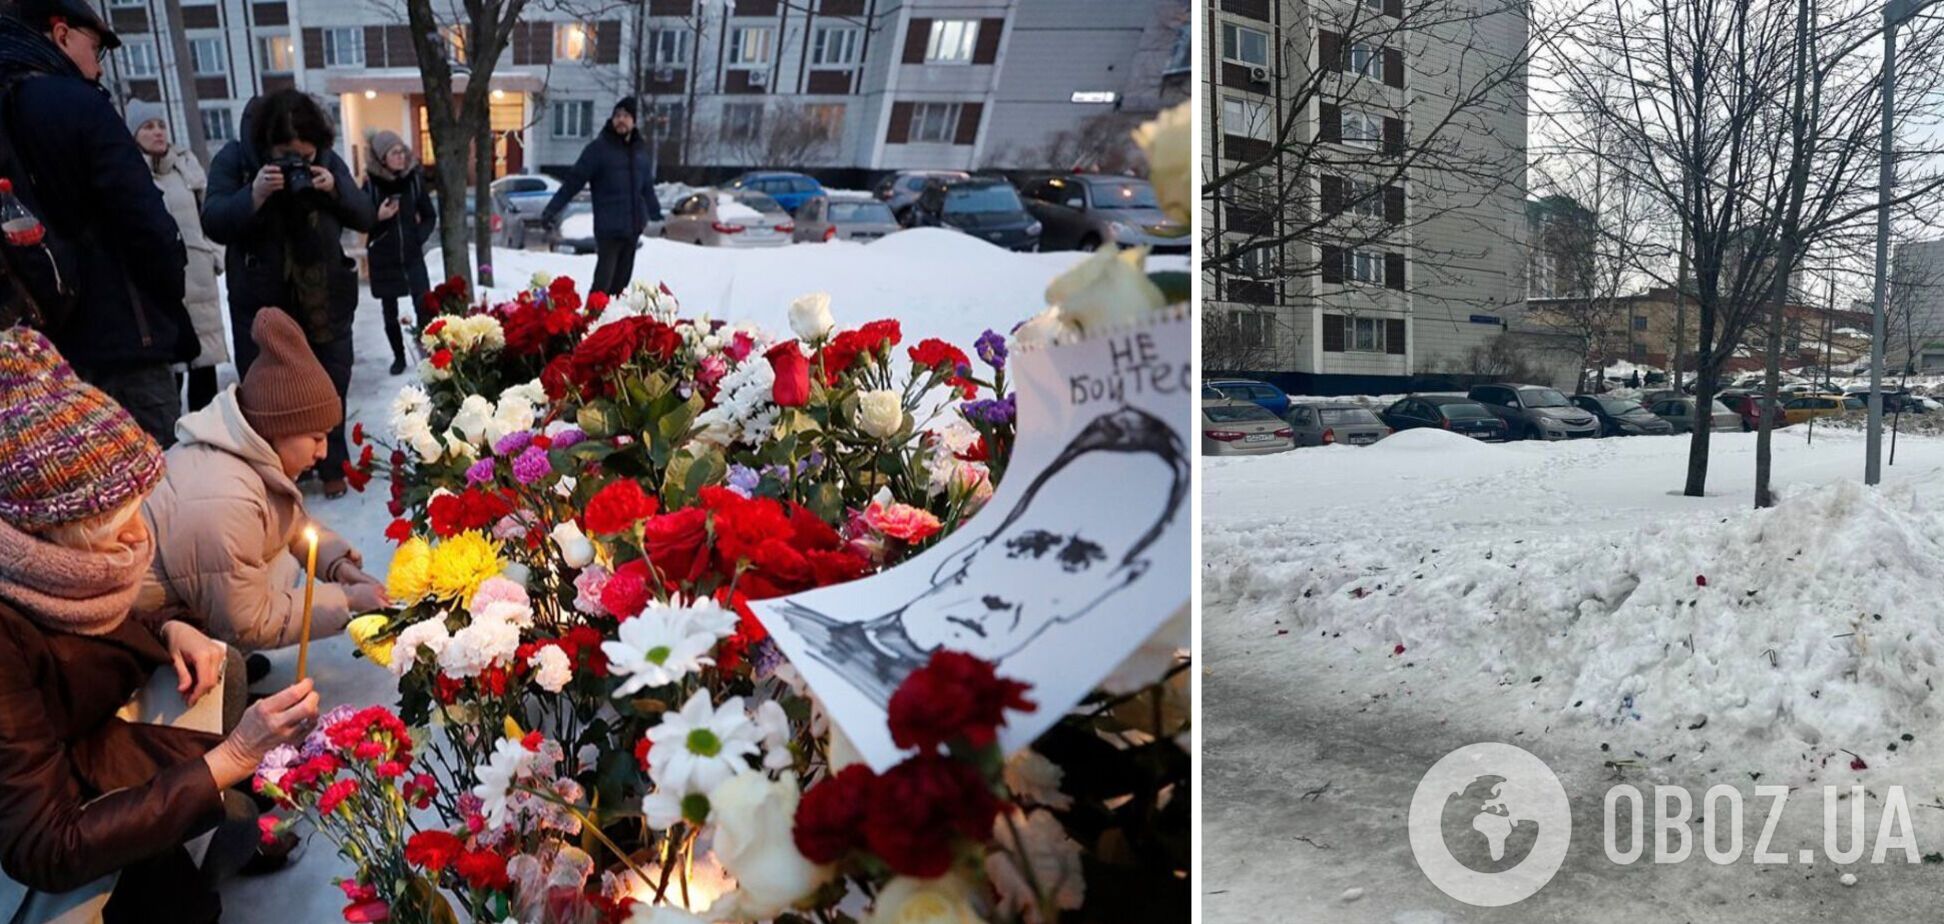 Російські комунальники скрізь знищили меморіали Навальному: всі квіти викинули. Фото
